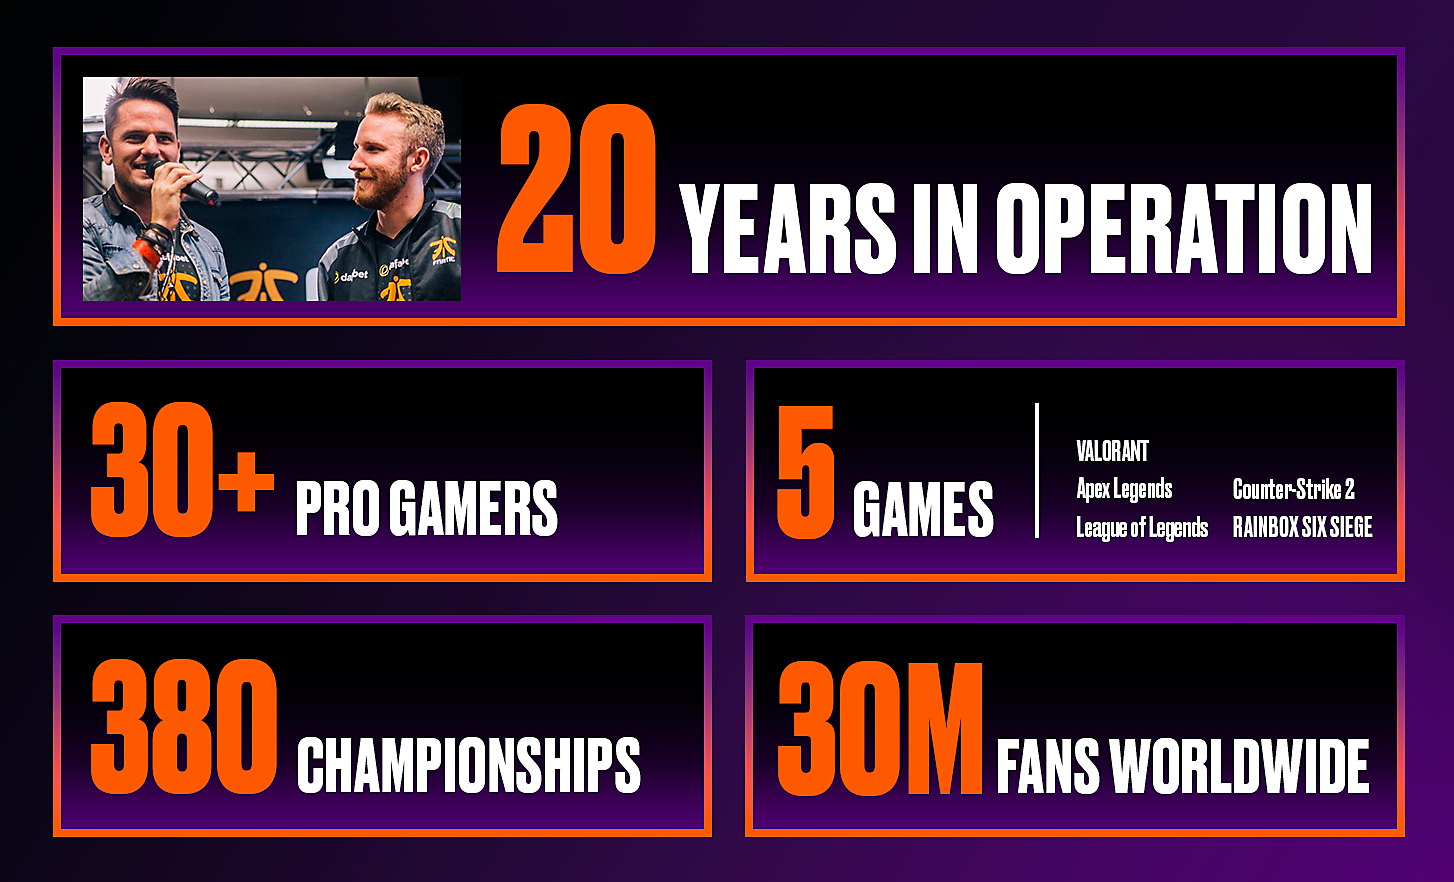 5 riquadri visualizzano varie statistiche di Fnatic, tra cui gli anni di attività e il numero di giocatori professionisti, partite, campionati e fan